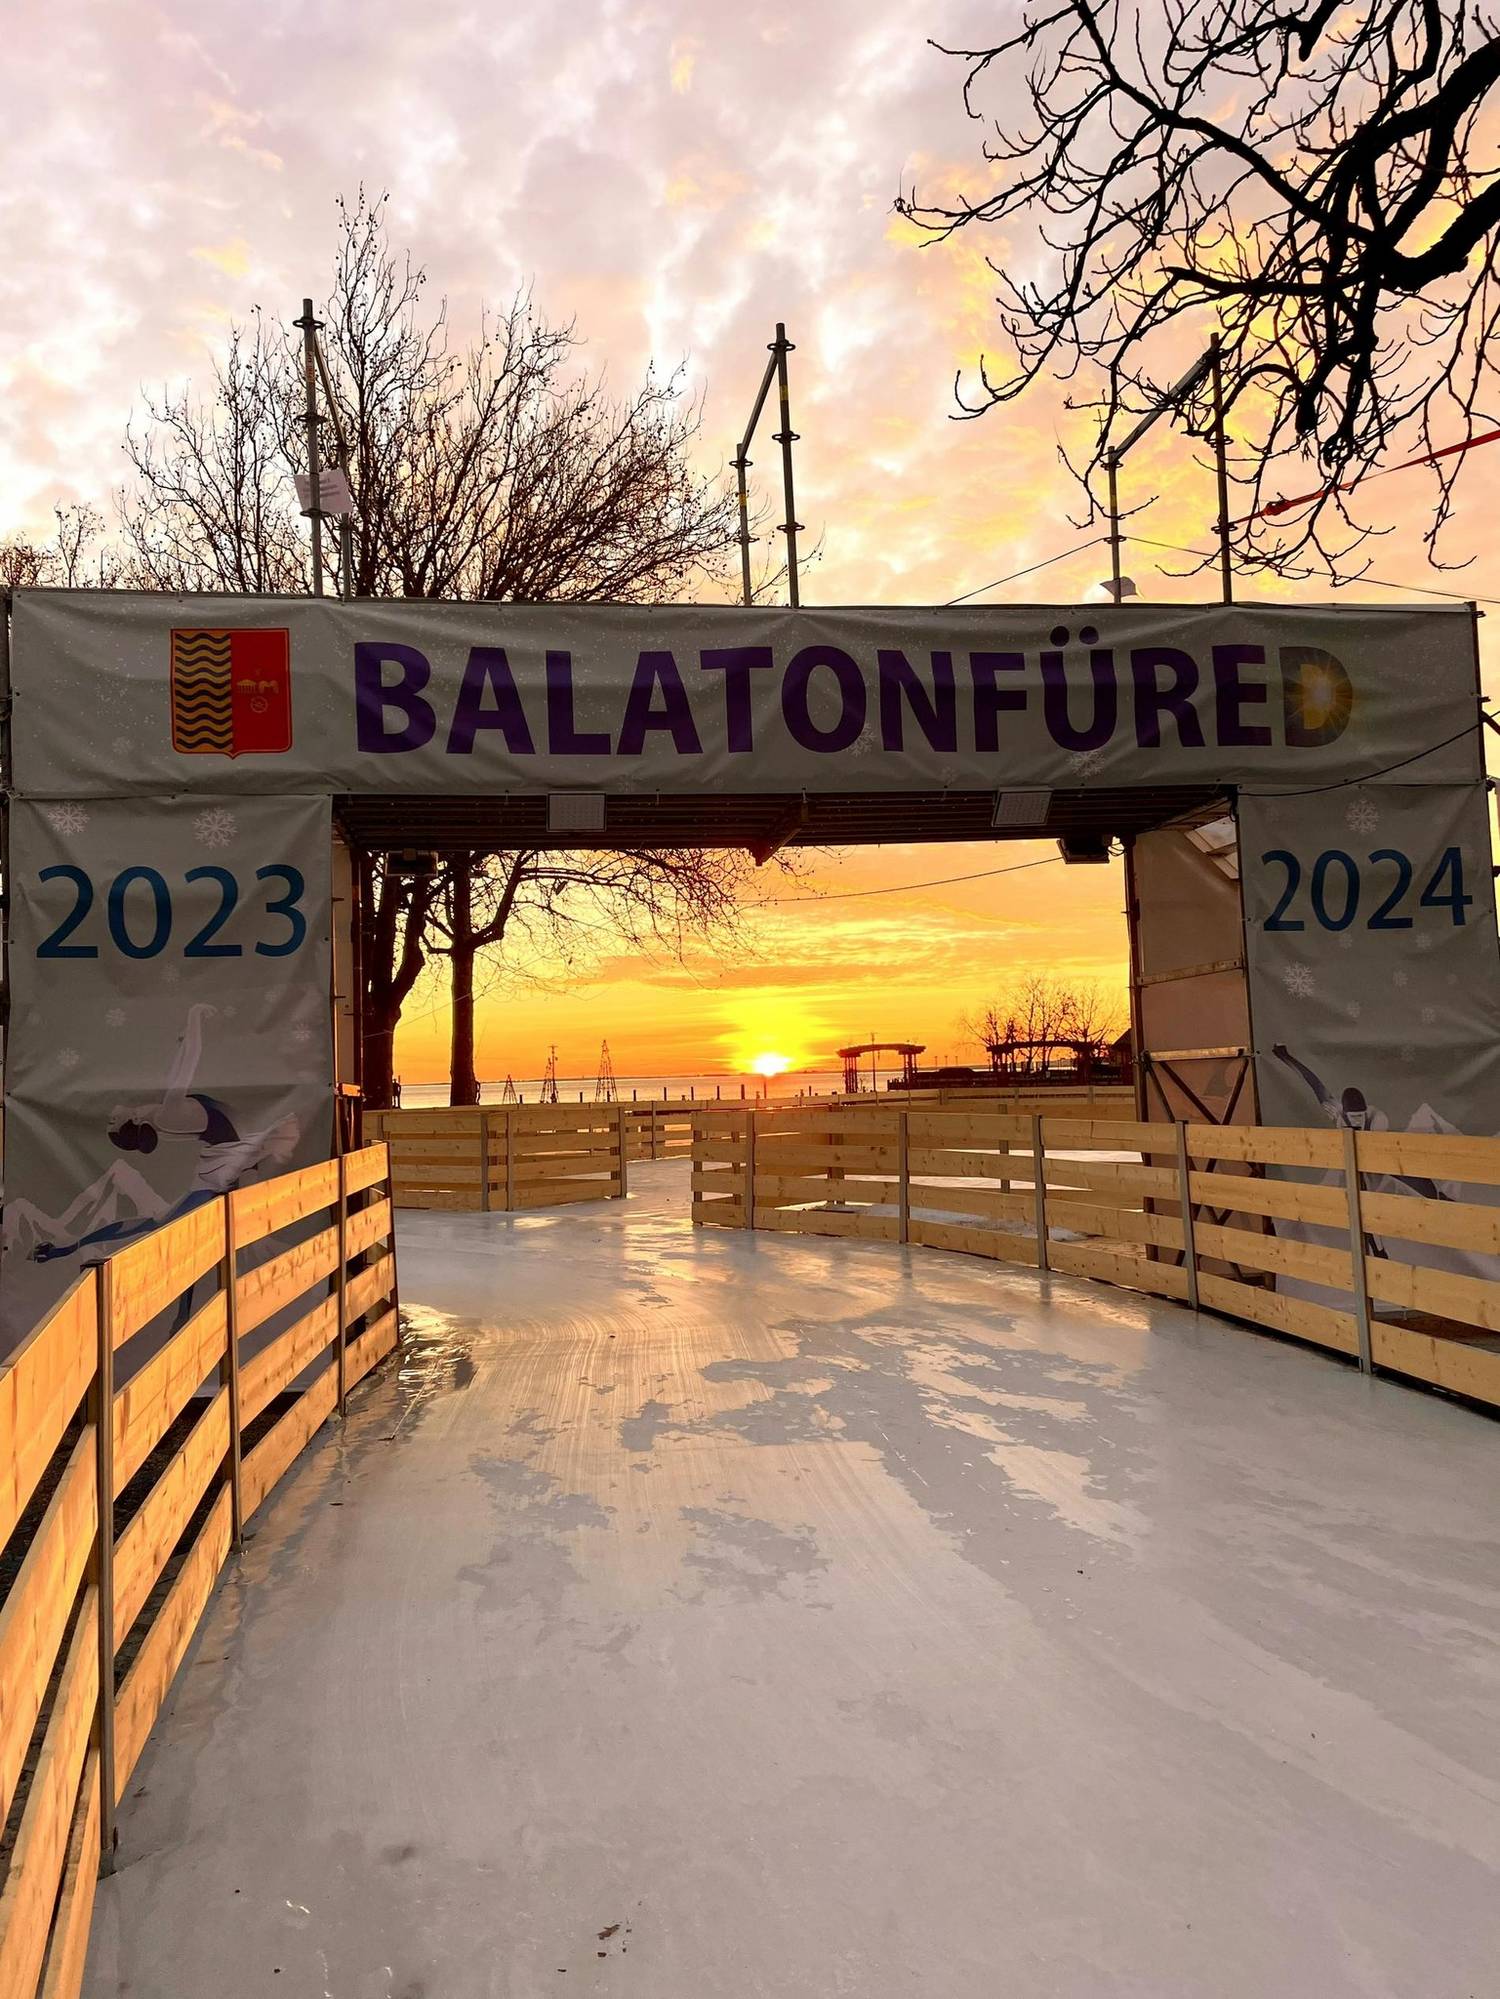 Ha a Balaton jegén nem is lehet korcsolyázni, a balatonfüredi jégpálya garantálja a maradandó élményt. Fantasztikus panoráma előtt csúszhattok végig az egy kilométeres jégfolyosón a Zákonyi utcától a Tagore sétányig.